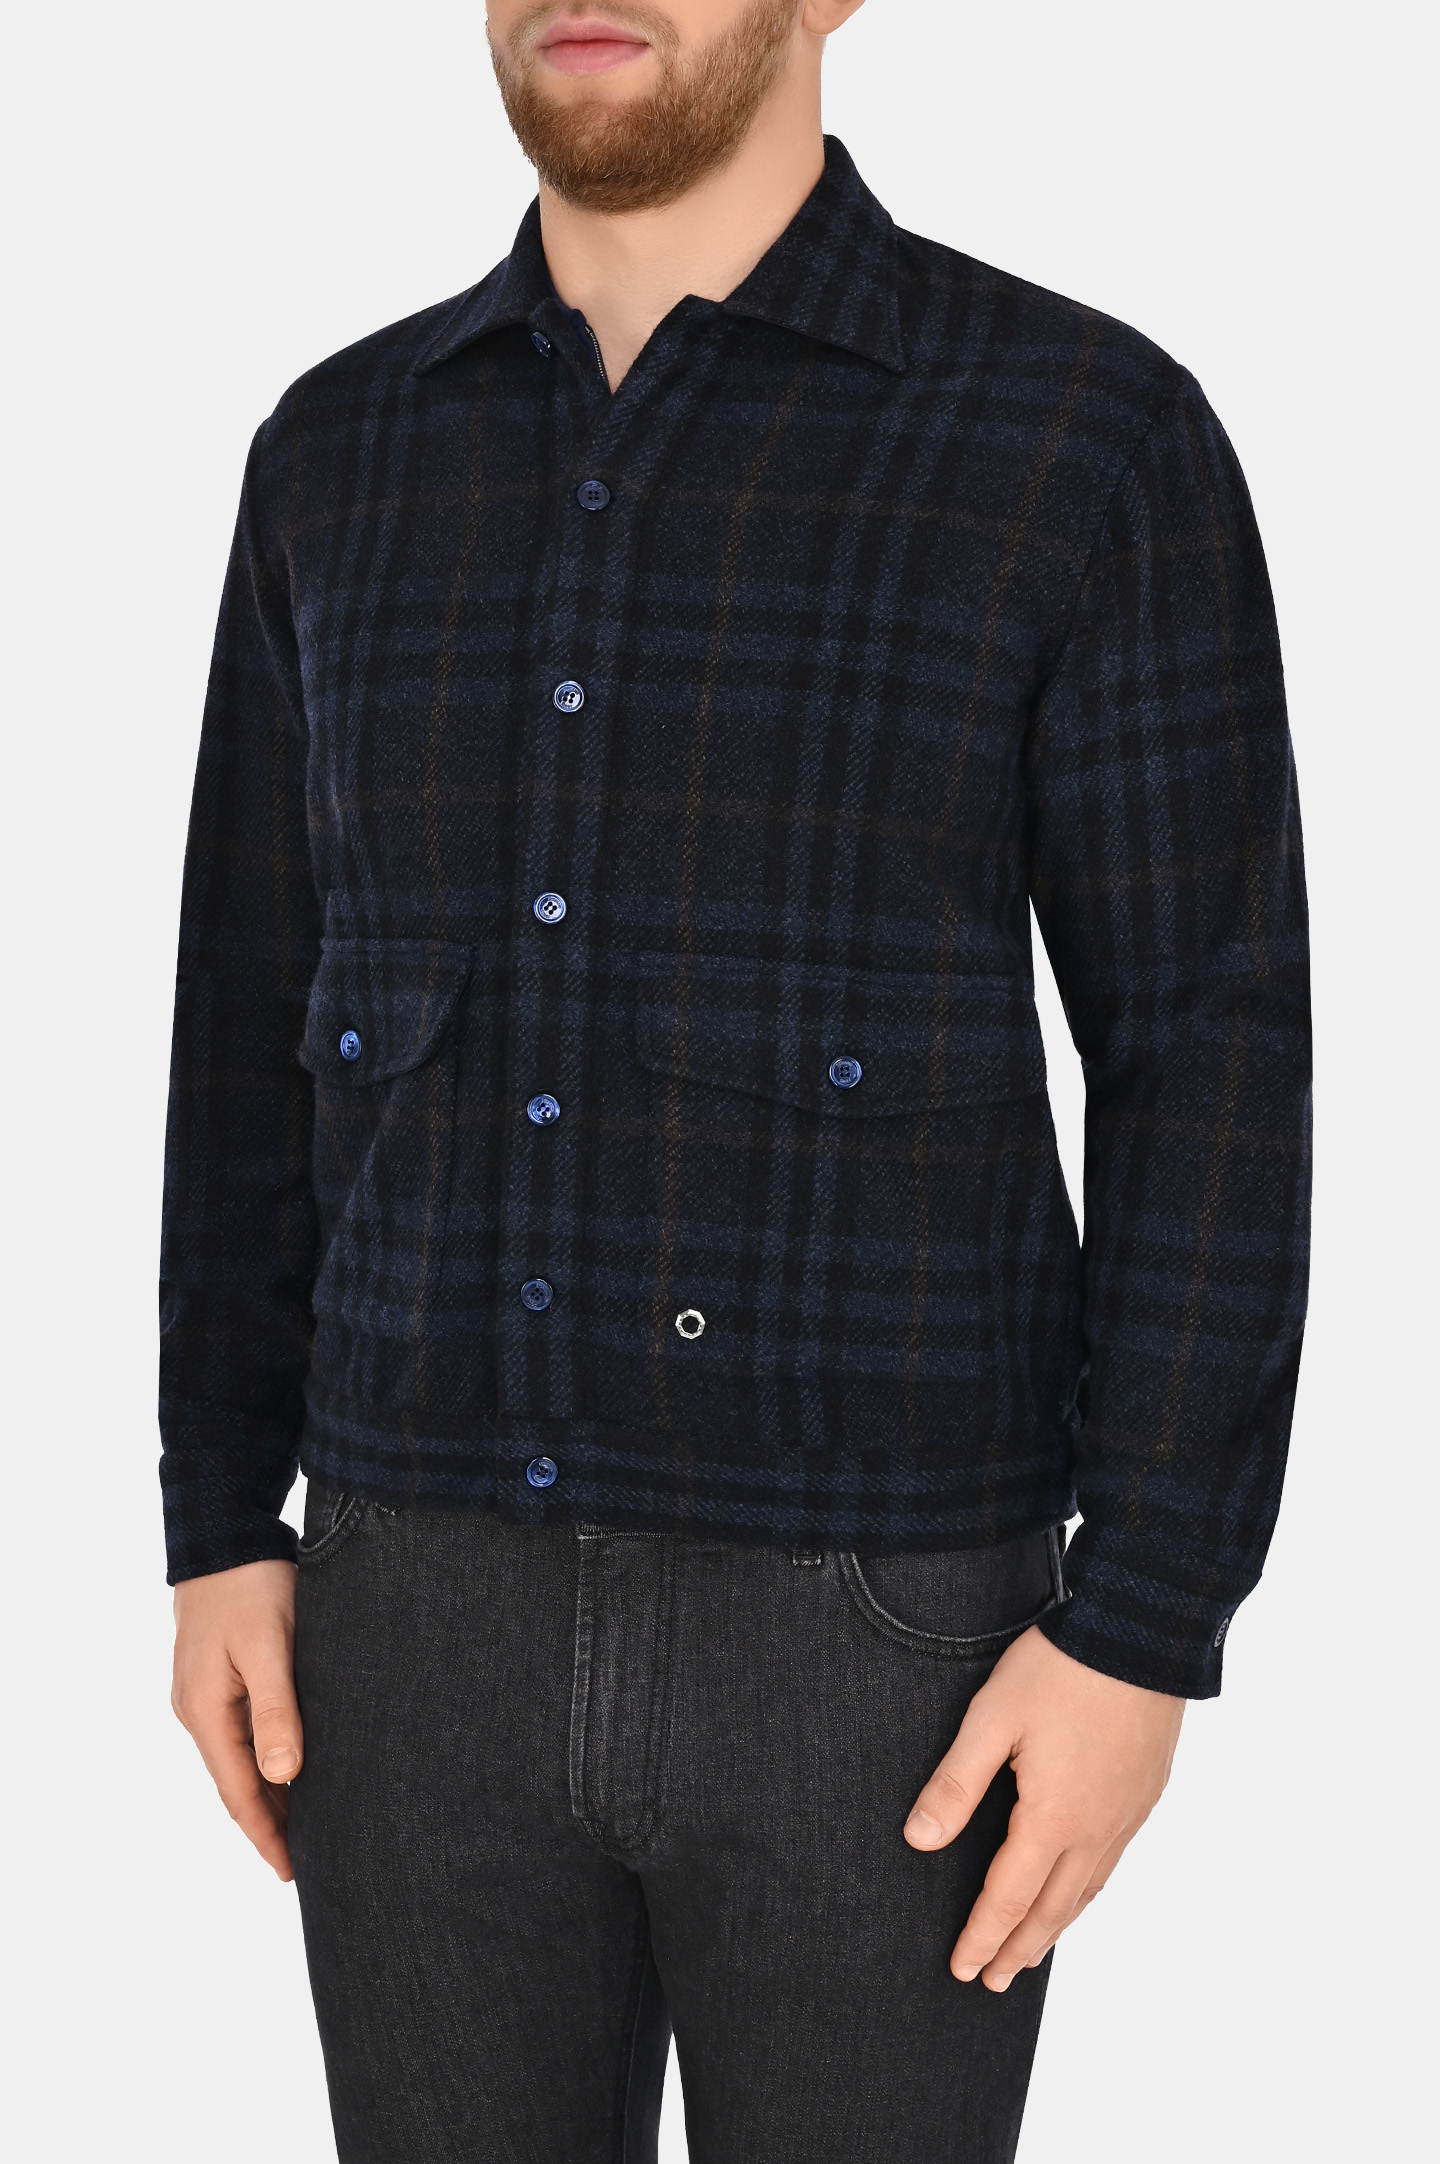 Рубашка-пиджак из шерсти и кашемира STEFANO RICCI MC007099 WC005P, цвет: Темно-синий, Мужской